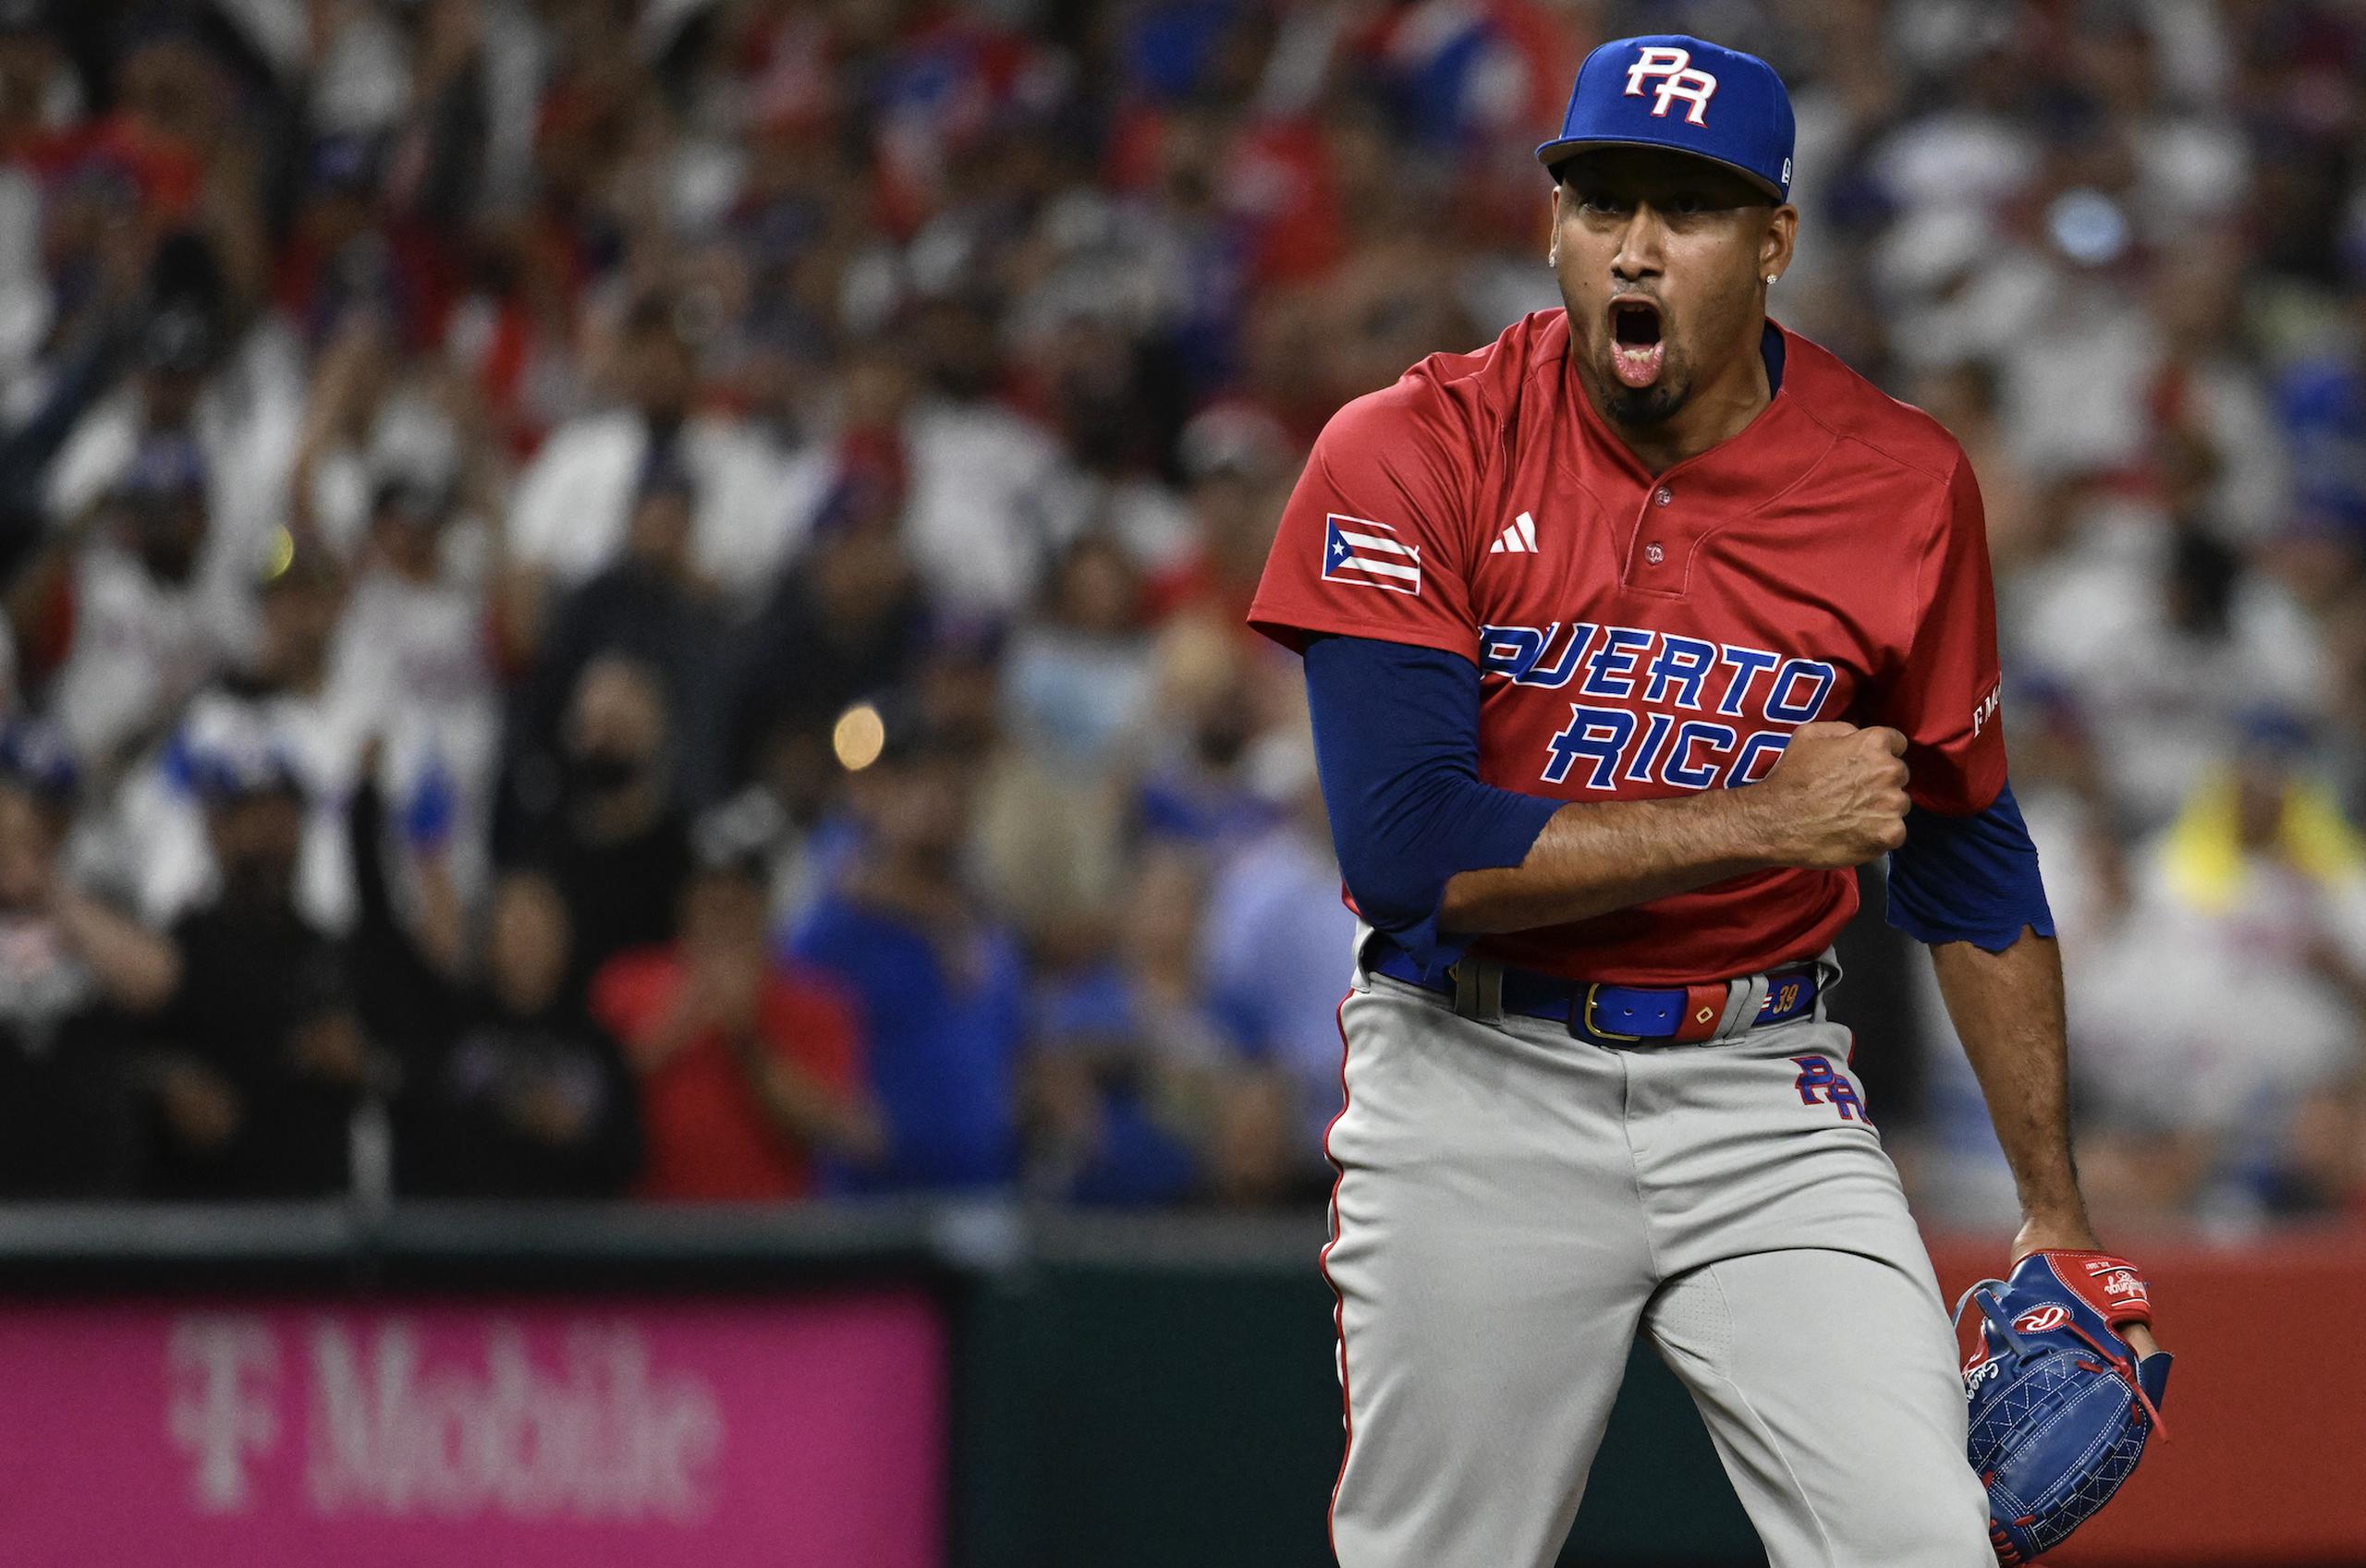 El pasado 15 de marzo, Edwin 'Sugar' Díaz salvó la victoria de Puerto Rico sobre República Dominicana en la primera ronda del Clásico Mundial de Béisbol. En la celebración posterior se desgarró un tendón de la patela de una rodilla y fue operado al día siguiente.